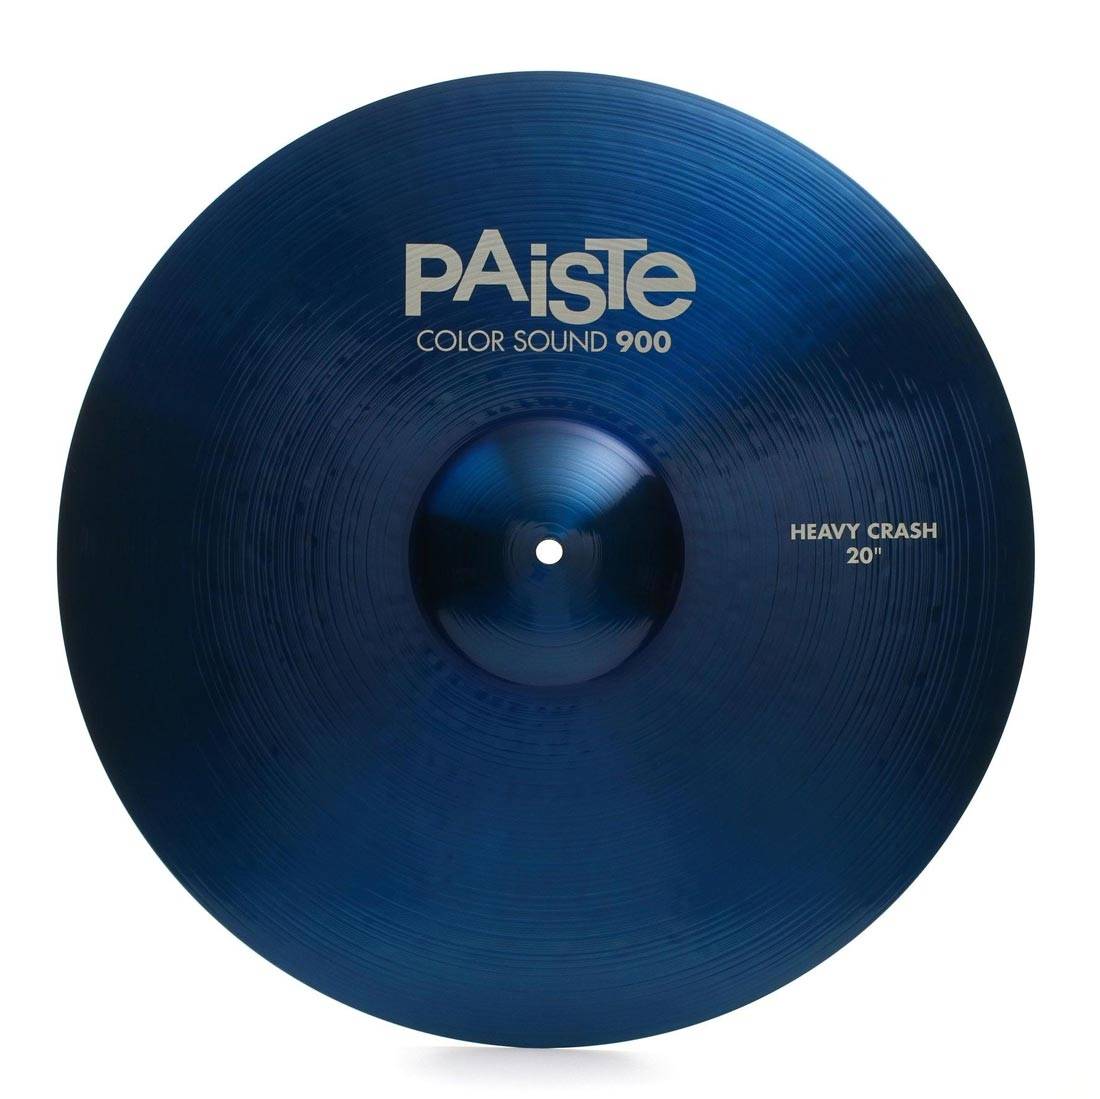 PAISTE 900 Color Sound 20'' Blue Heavy Crash